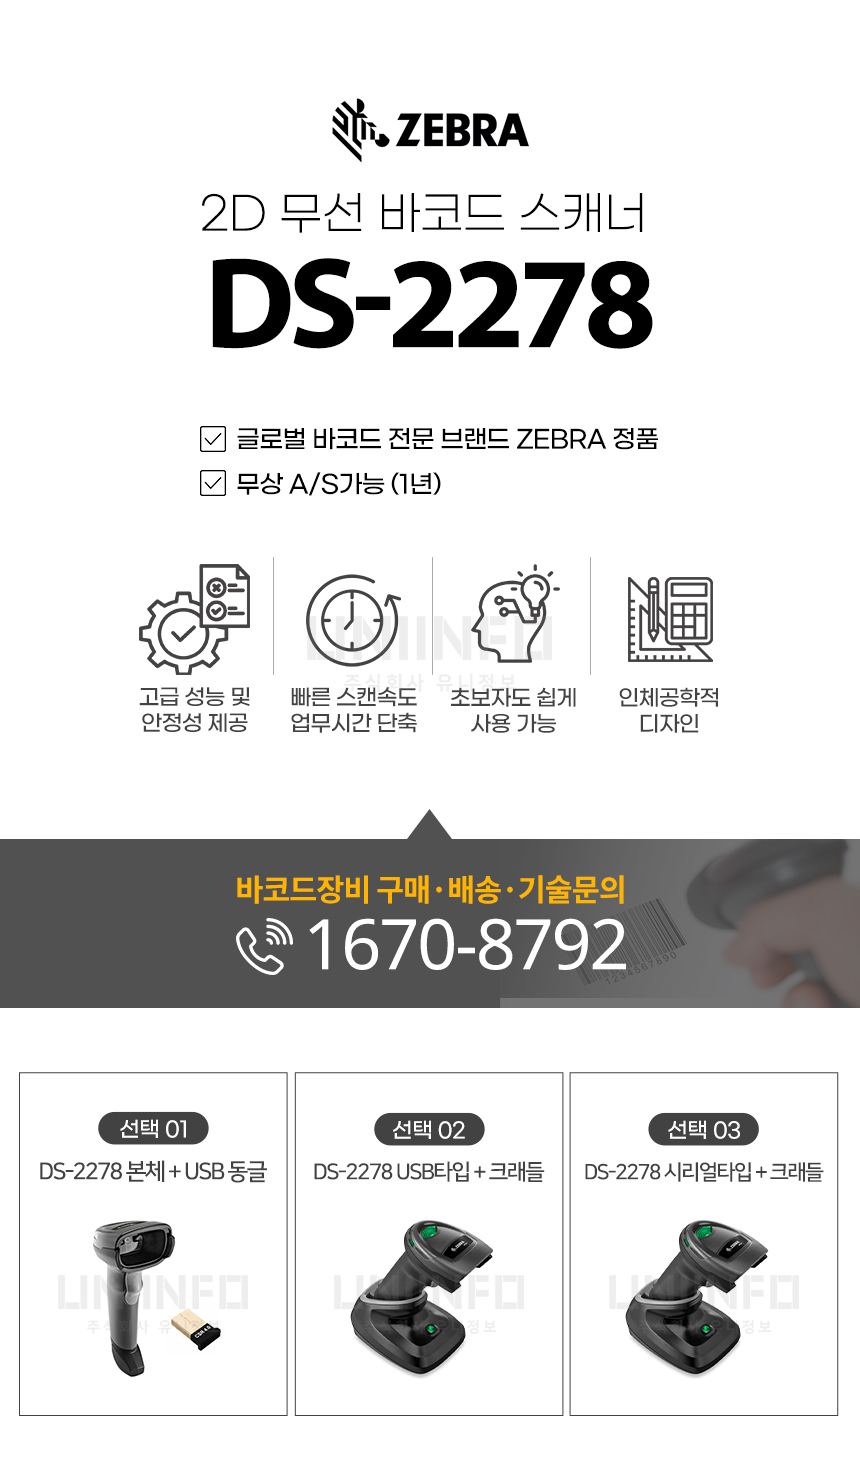 zebra 2d 무선 바코드 스캐너 ds-2278 글로벌 바코드 전문 브랜드 정품 무상 as 1년 가능